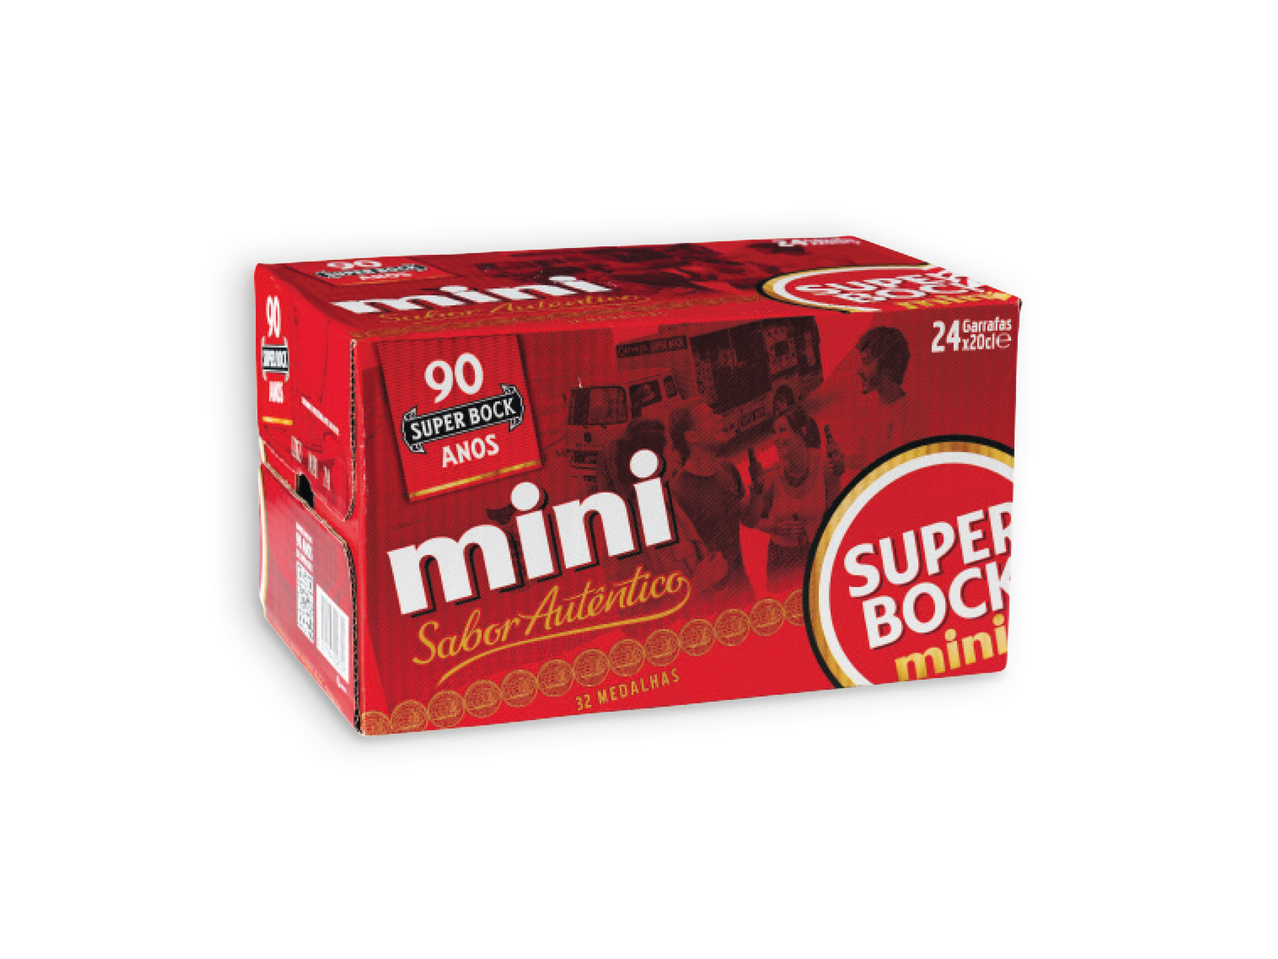 SUPER BOCK(R) Cerveja Mini